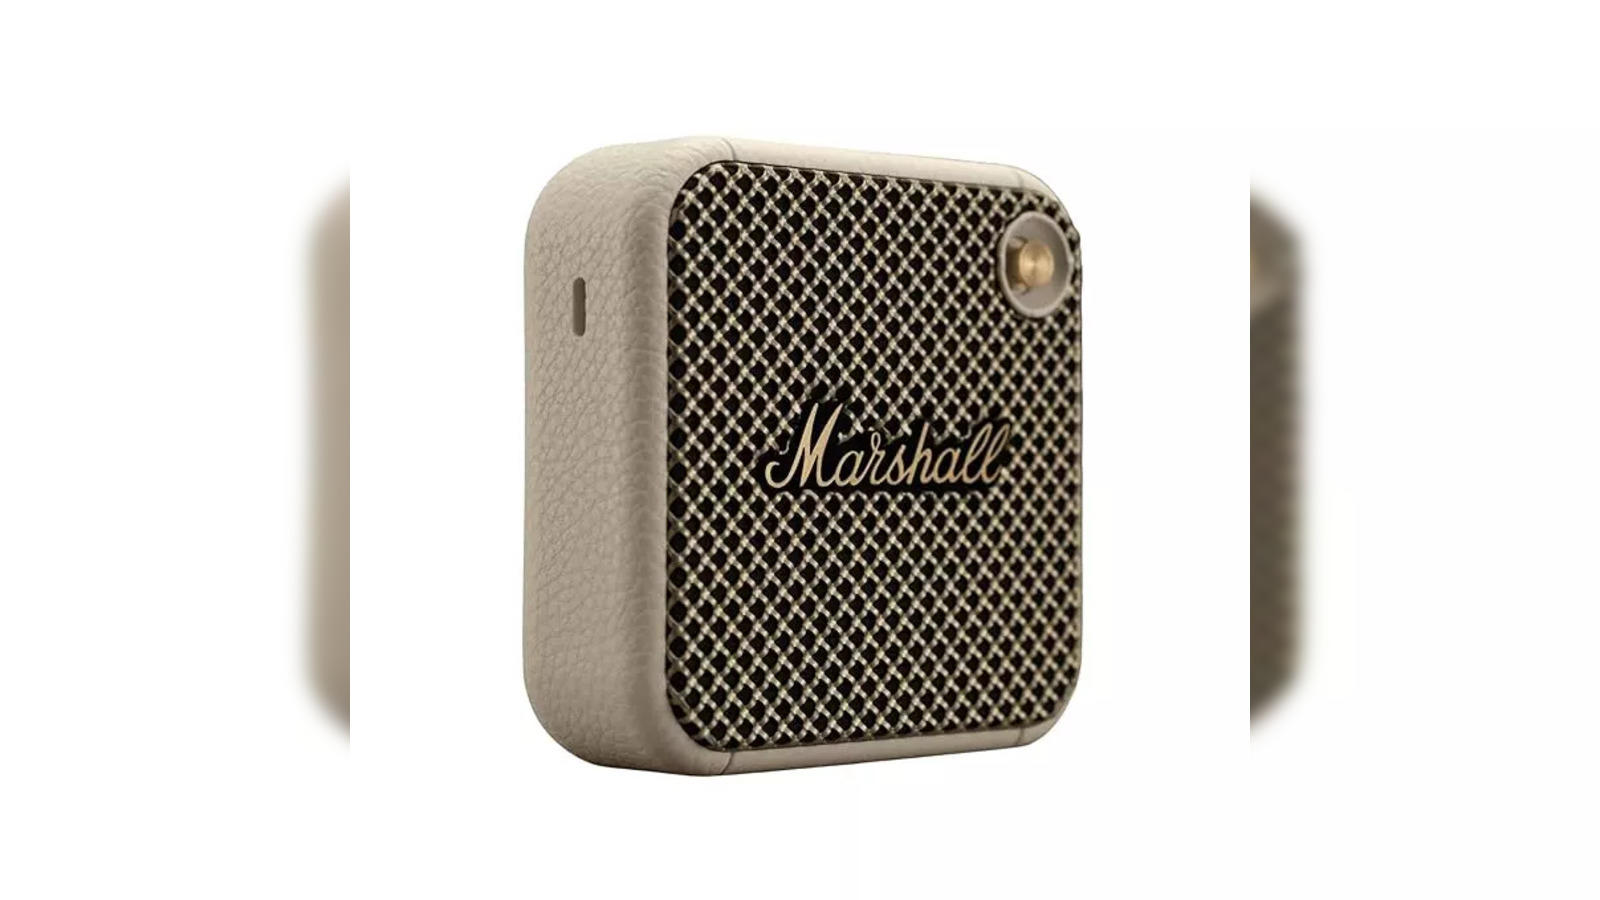 Portable marshall speaker: 6 best Portable Marshall Speakers for